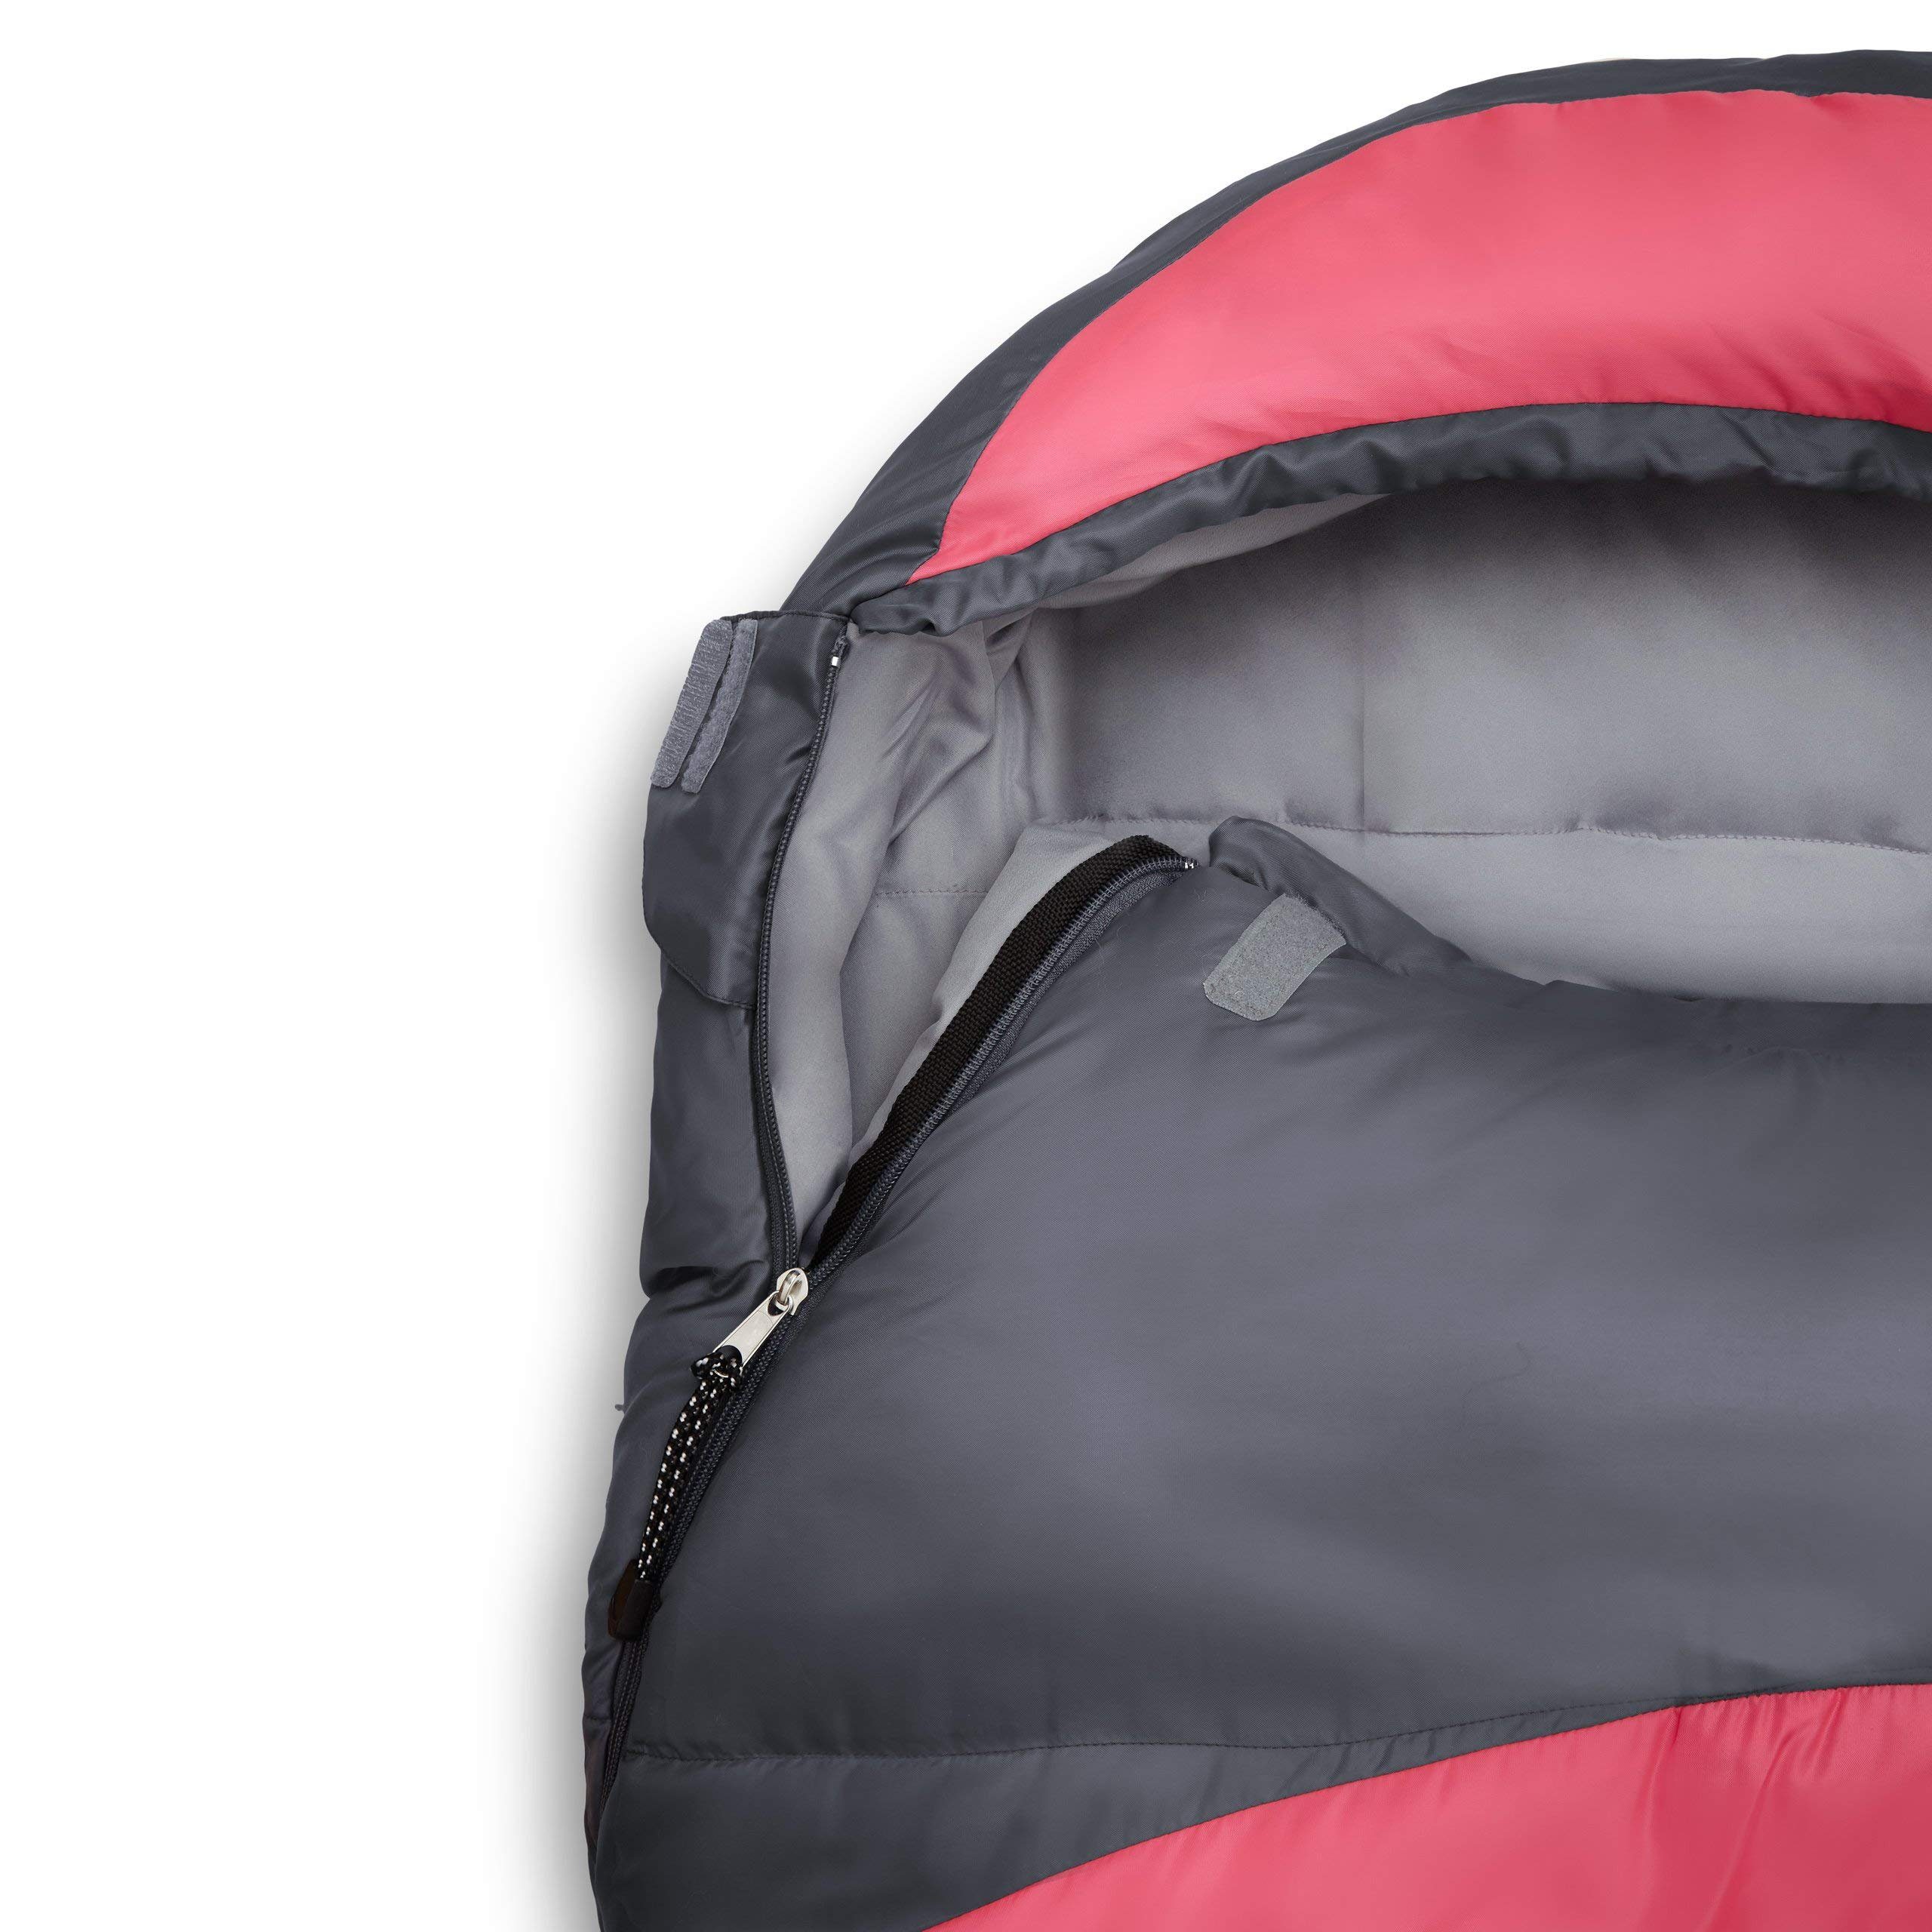 Lumaland Mumienschlafsack Where Tomorrow pink 230x80x55 wasserabweisend Tasche, Camping Wärmekragen atmungsaktiv Schlafsack mit